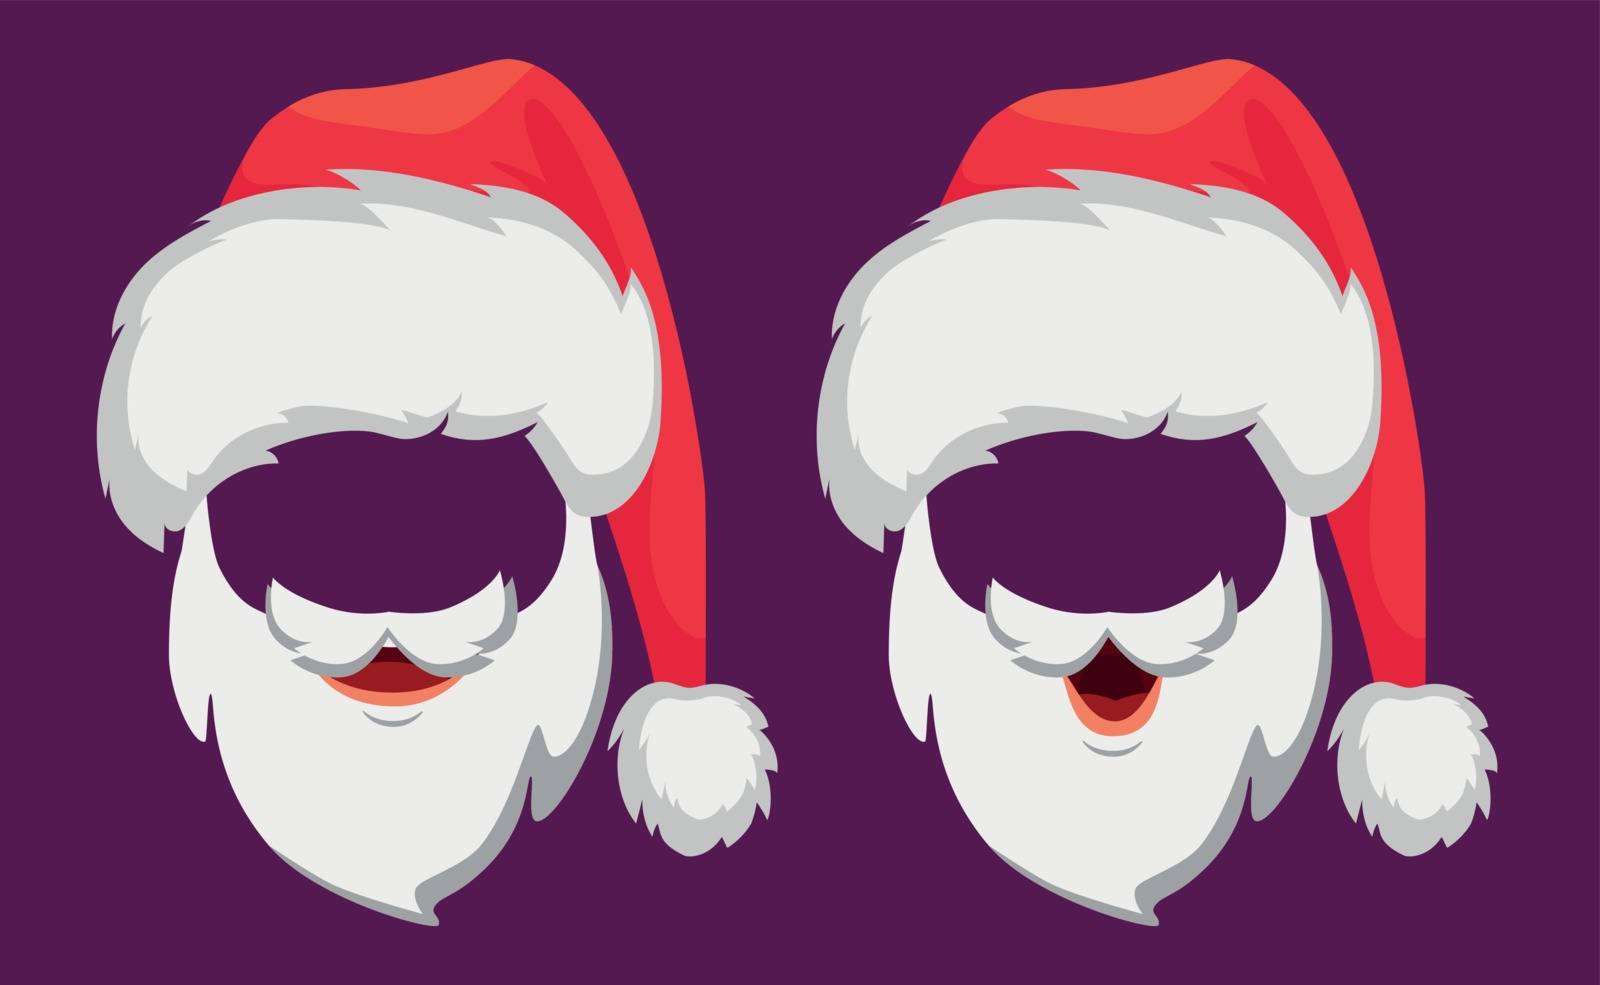 Santa Claus hat and beard. Santa Claus vector illustration